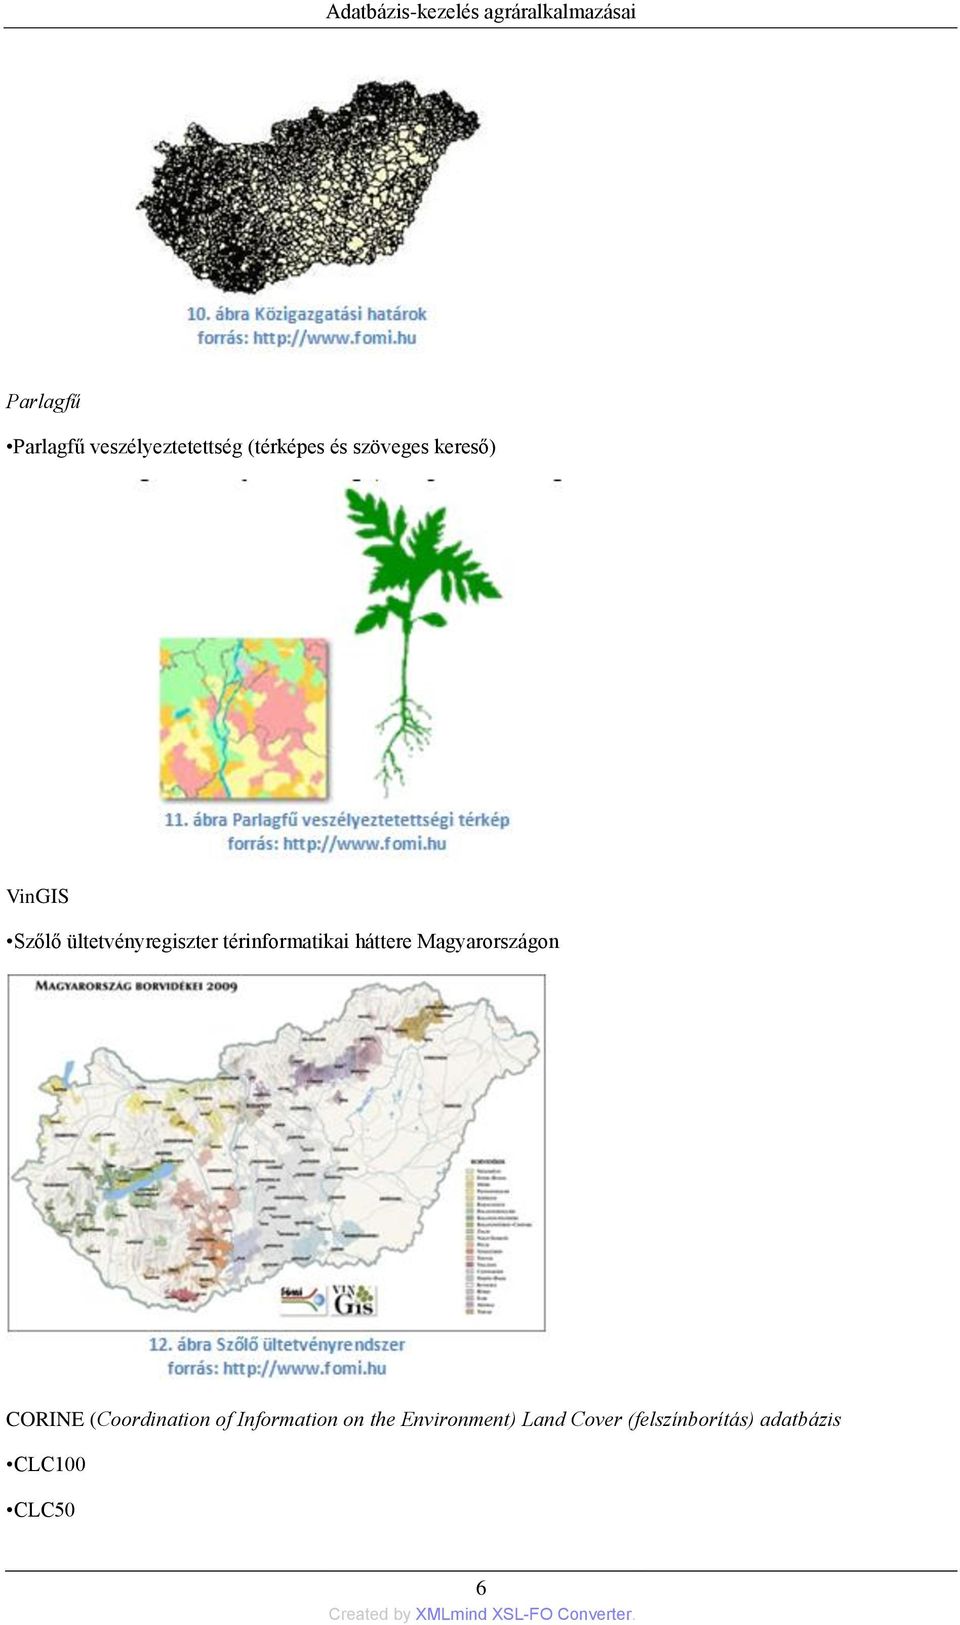 ültetvényregiszter térinformatikai háttere Magyarországon CORINE